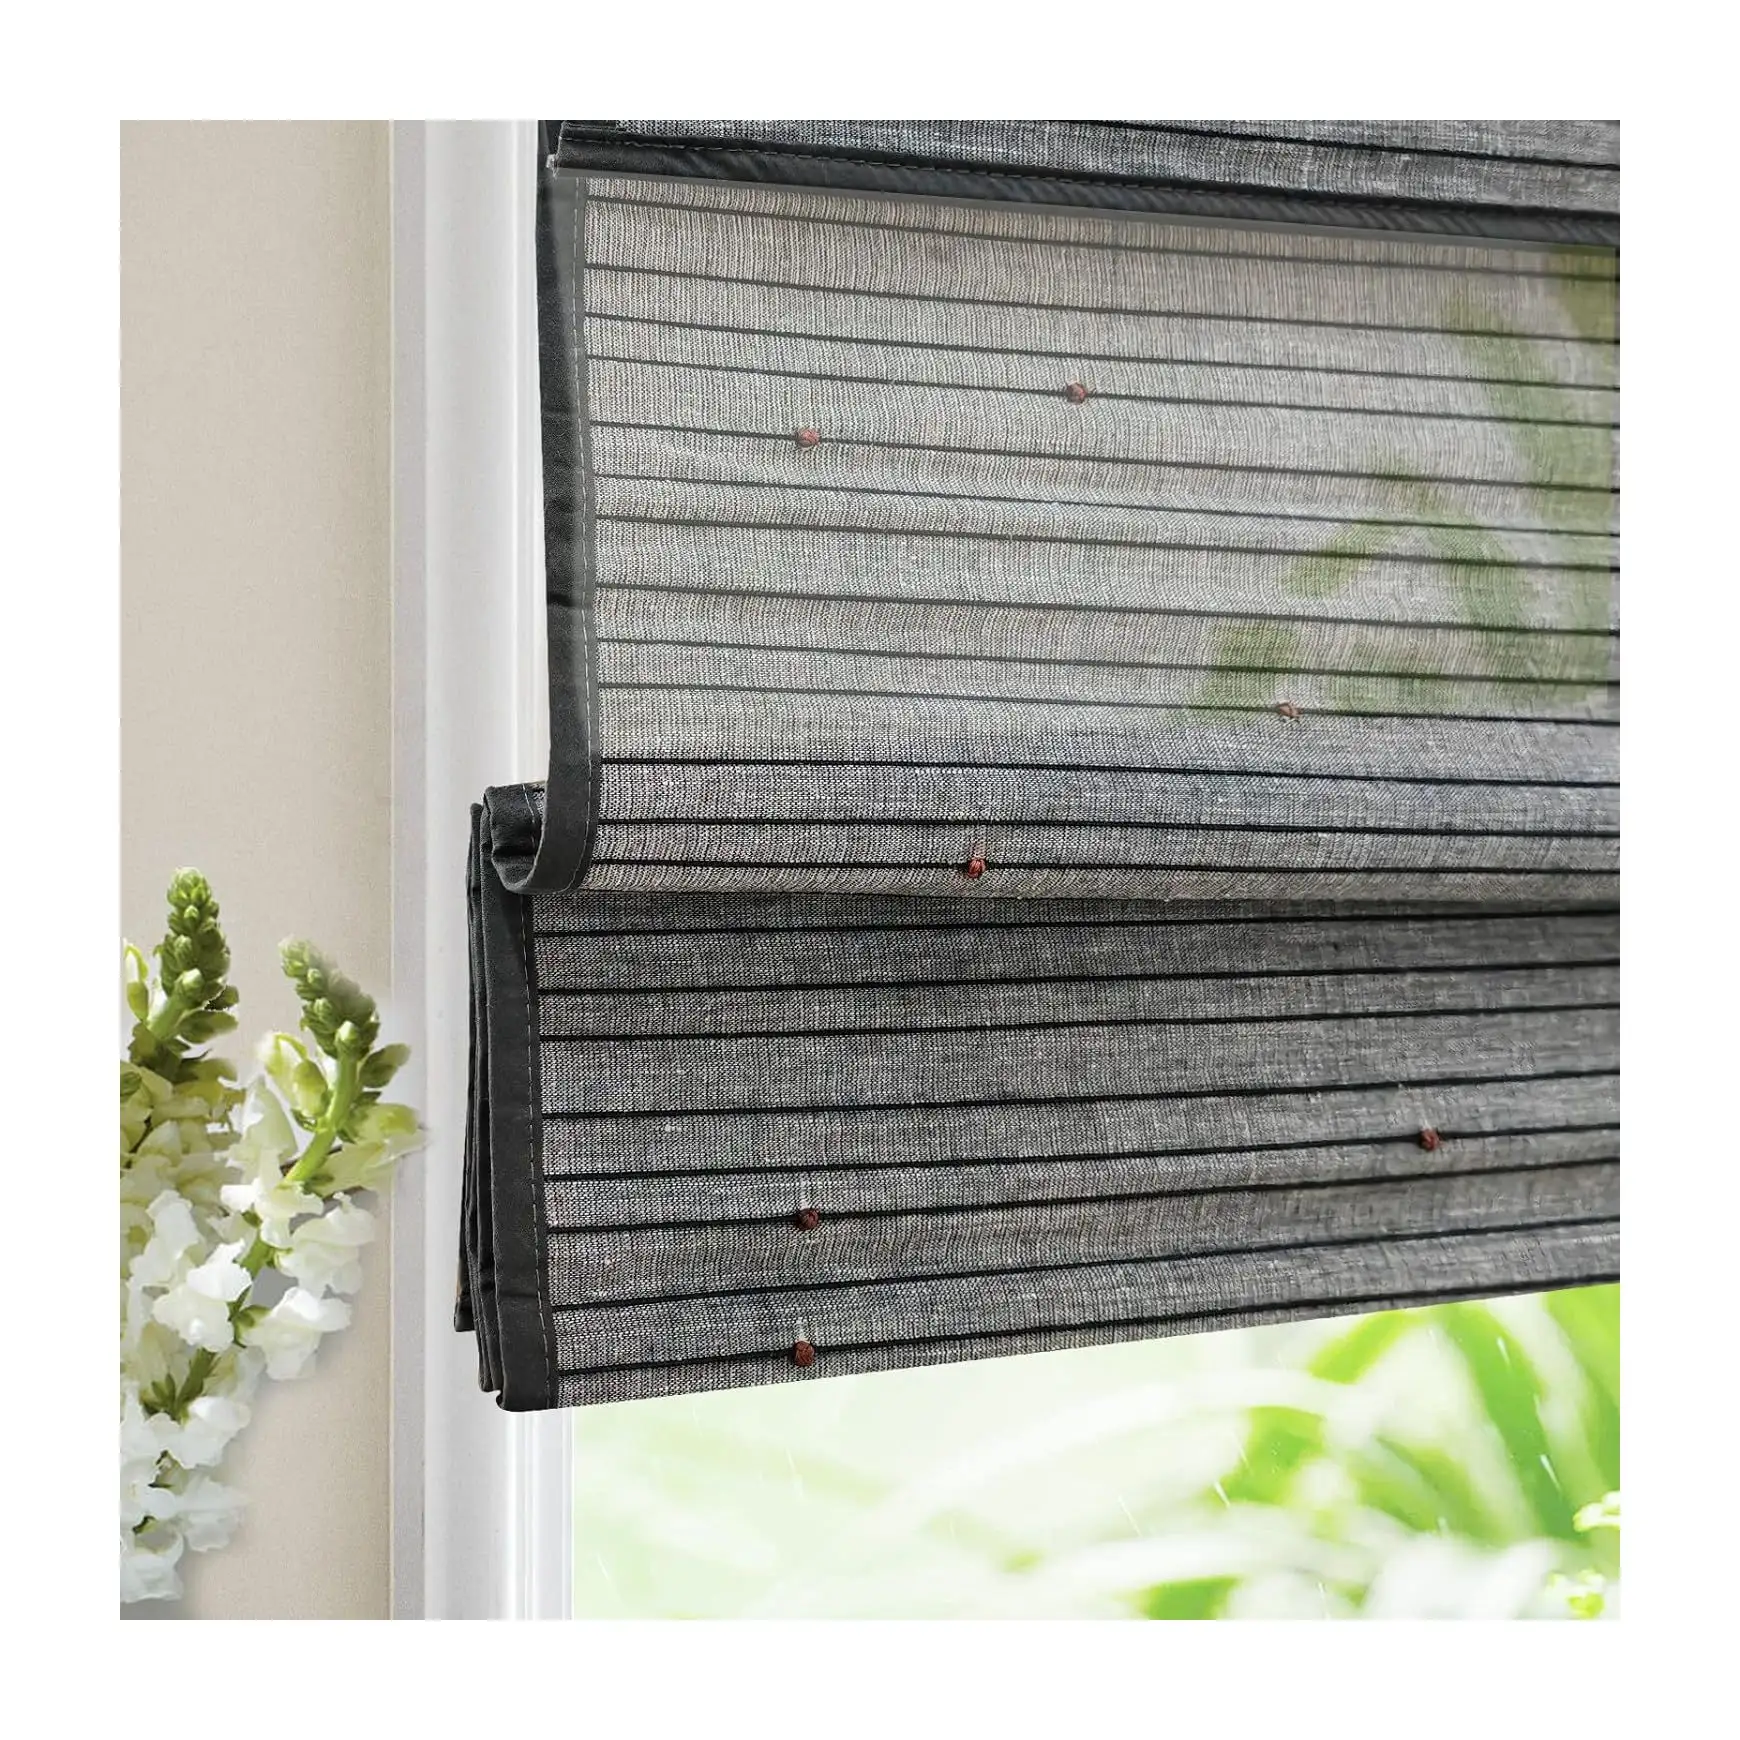 Cortinas de bambu para janelas com rolo blackout, cortinas venezianas verticais para janelas, cortinas de bambu pretas inteligentes para janelas